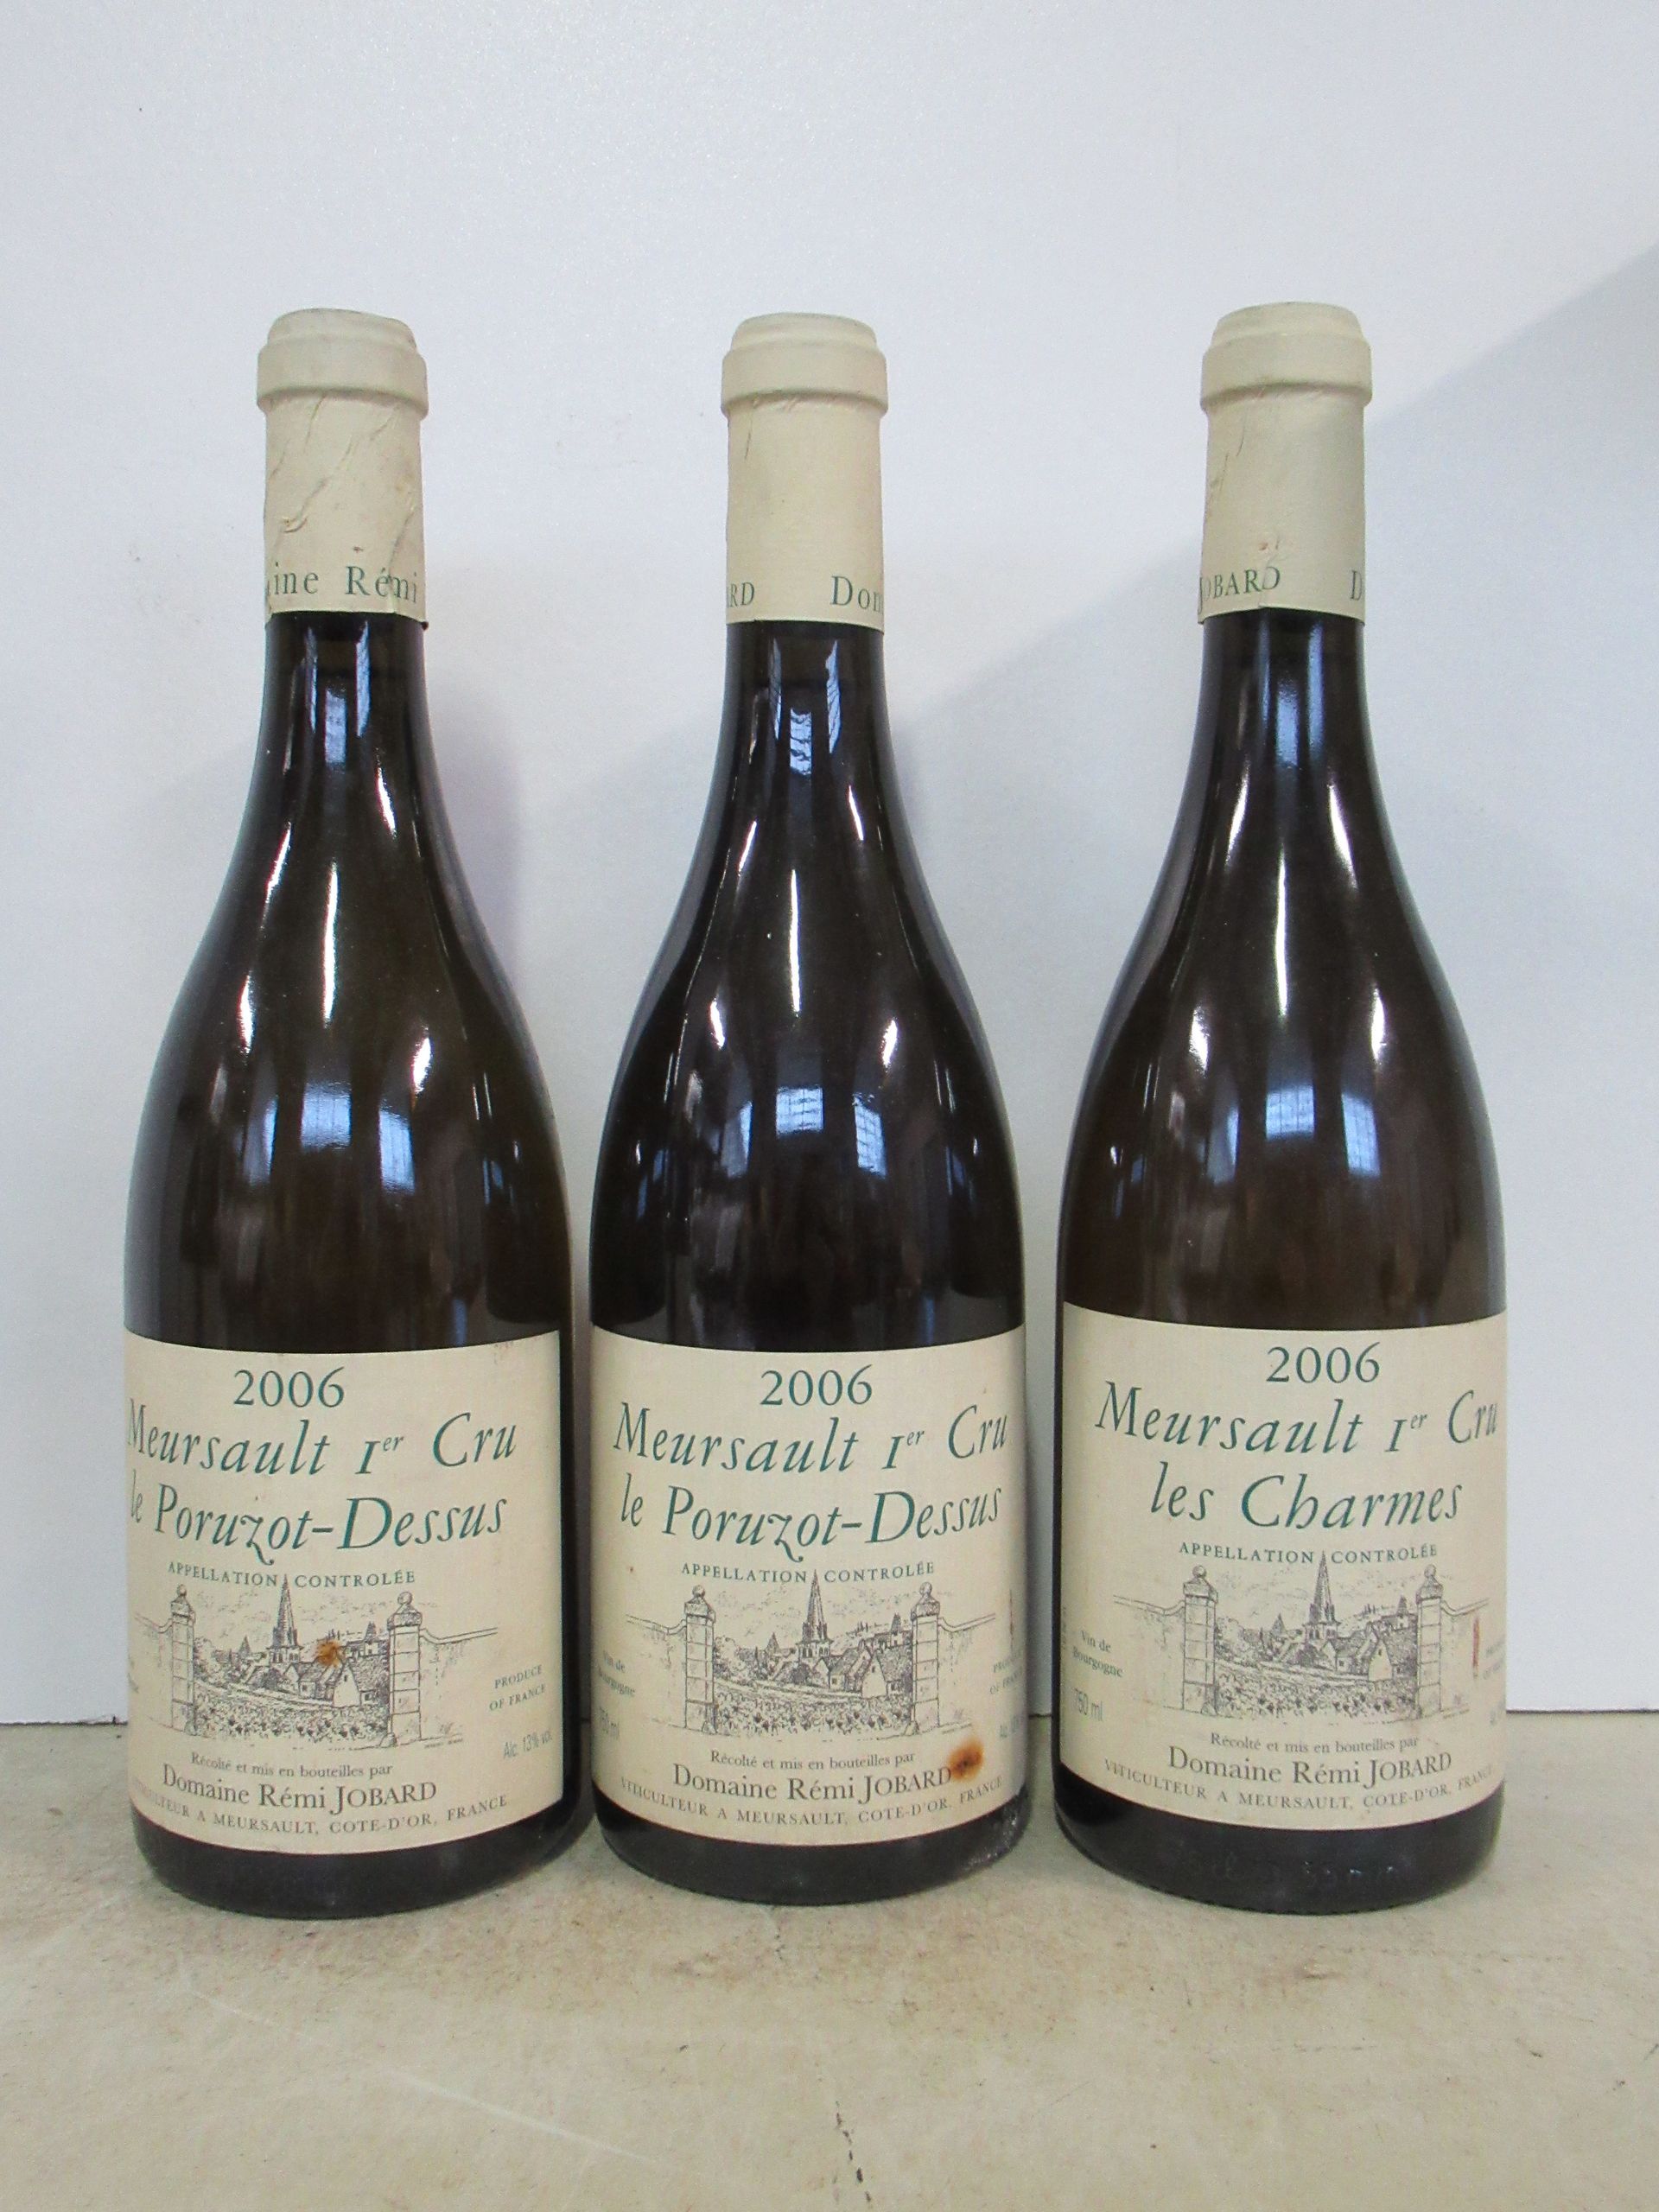 Vente aux enchères de vins de Bourgogne